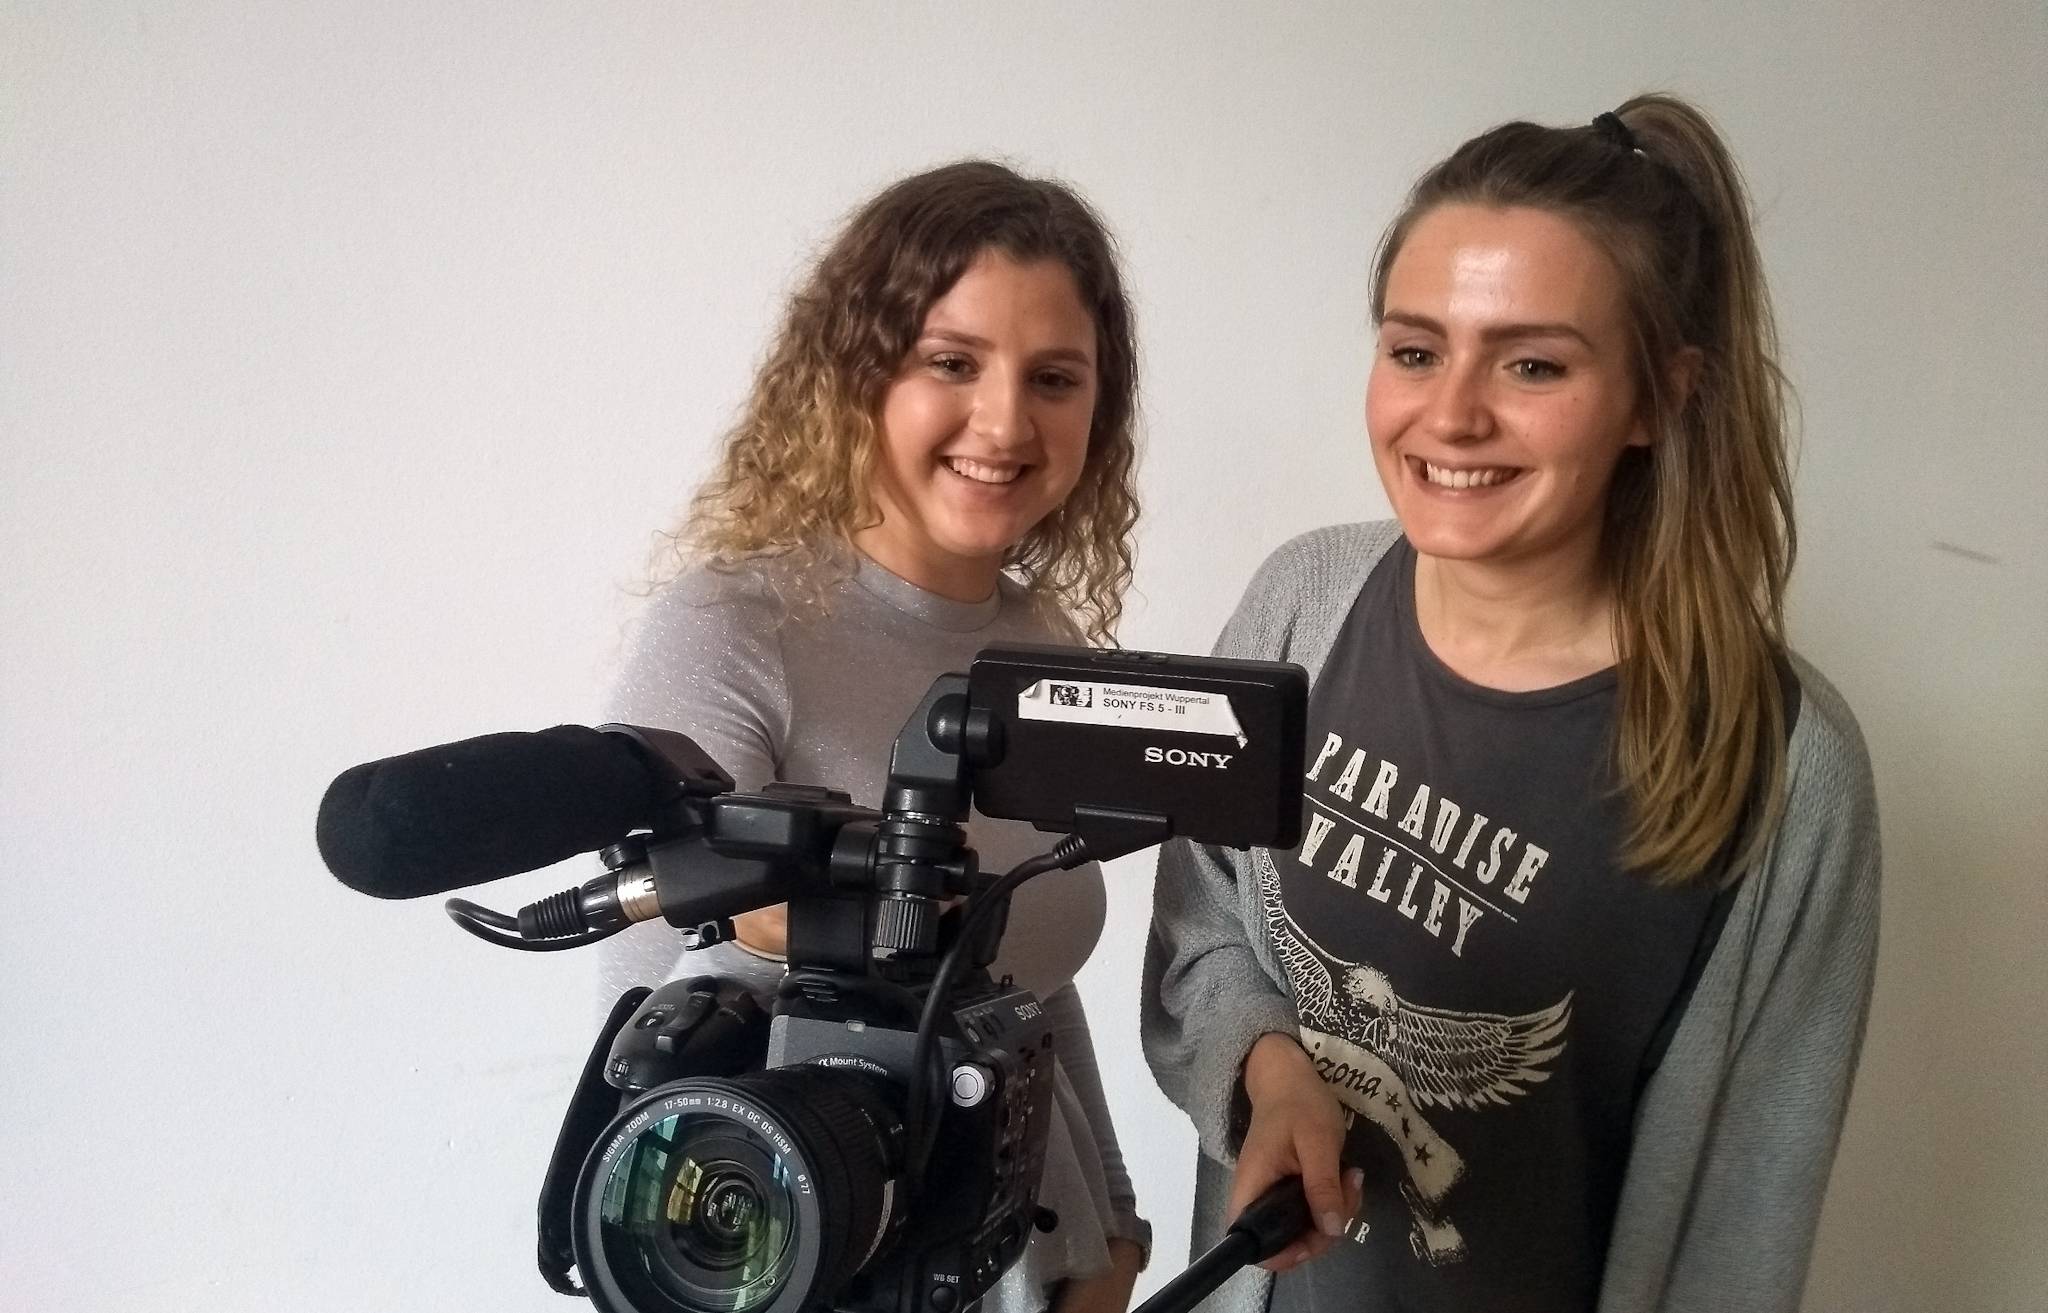 Lotta Zirkenbach und Christina Schmitz, Praktikantinnen des Medienprojekts, möchten mit ihren Filmen Probleme zum Thema machen.